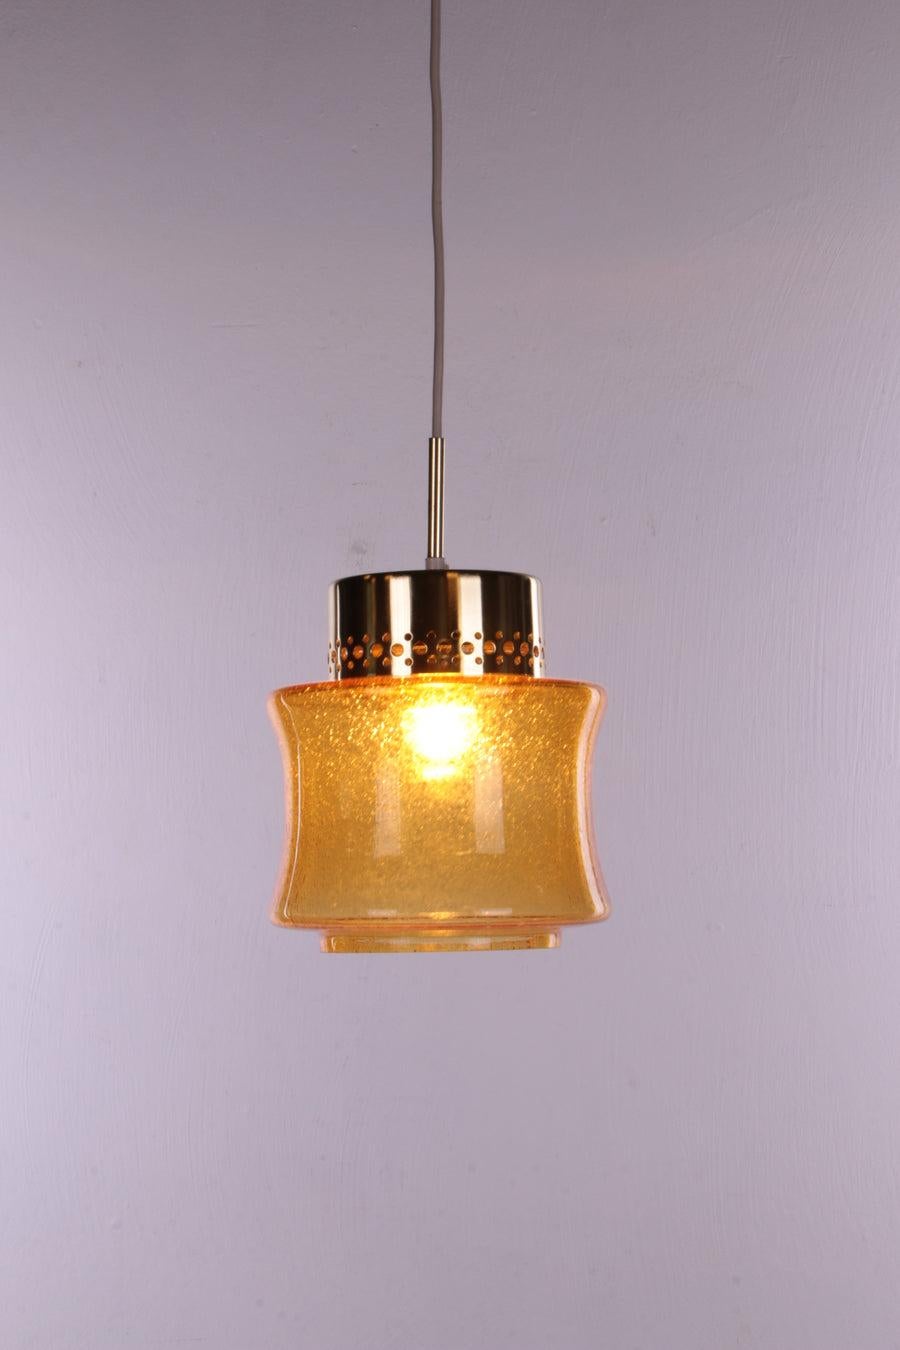 Ensemble de 3 lampes à suspension Vintage Hollywood Regency, 1960s Allemagne

Ce sont de très belles lampes avec un bel abat-jour en verre jaune.

Monté dans un support de couleur or avec un raccord E27.

Ces lampes ont été fabriquées par VEB narva